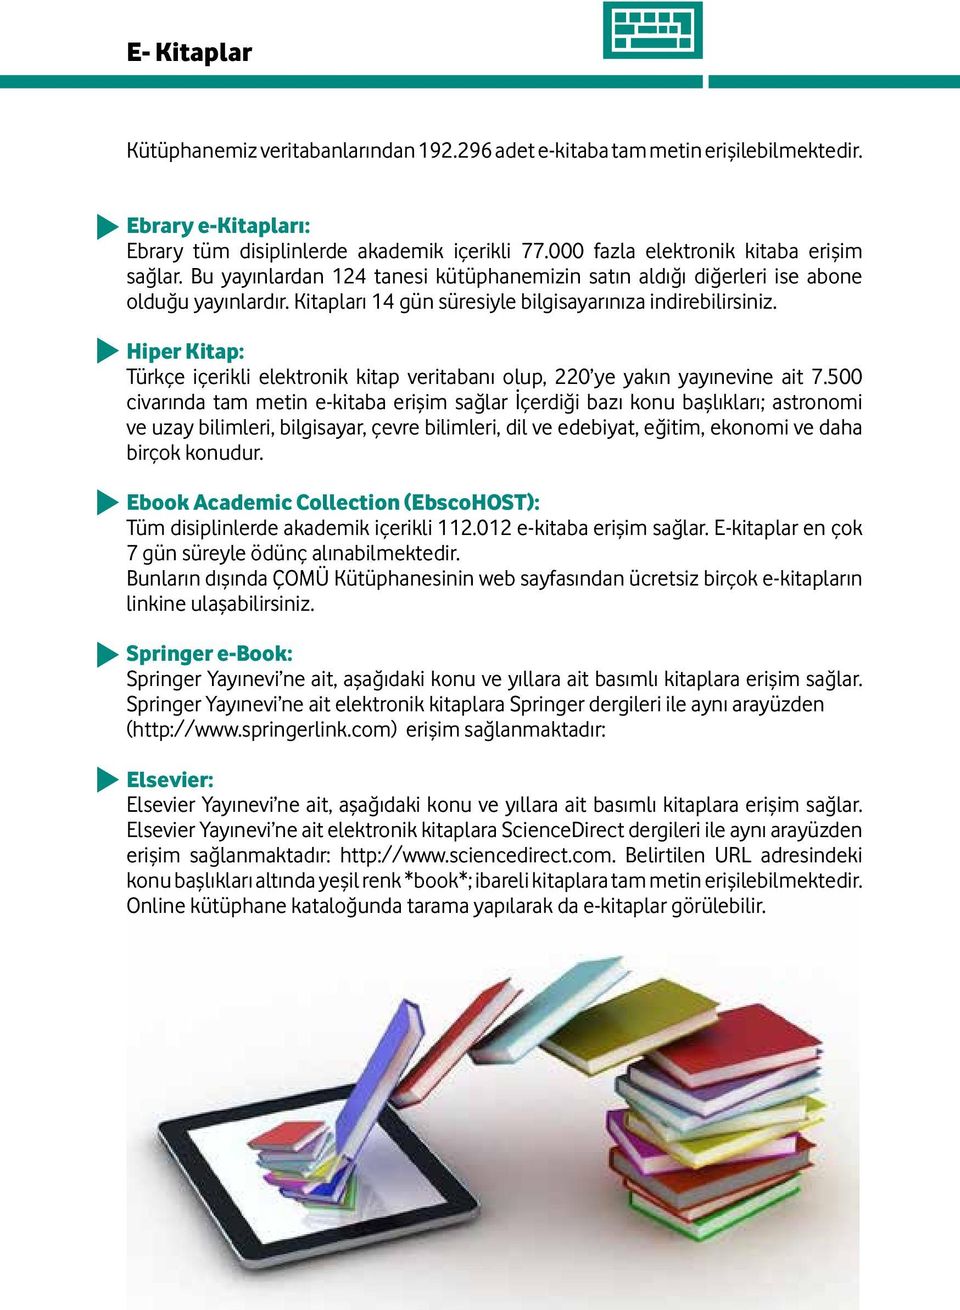 Hiper Kitap: Türkçe içerikli elektronik kitap veritabanı olup, 220 ye yakın yayınevine ait 7.